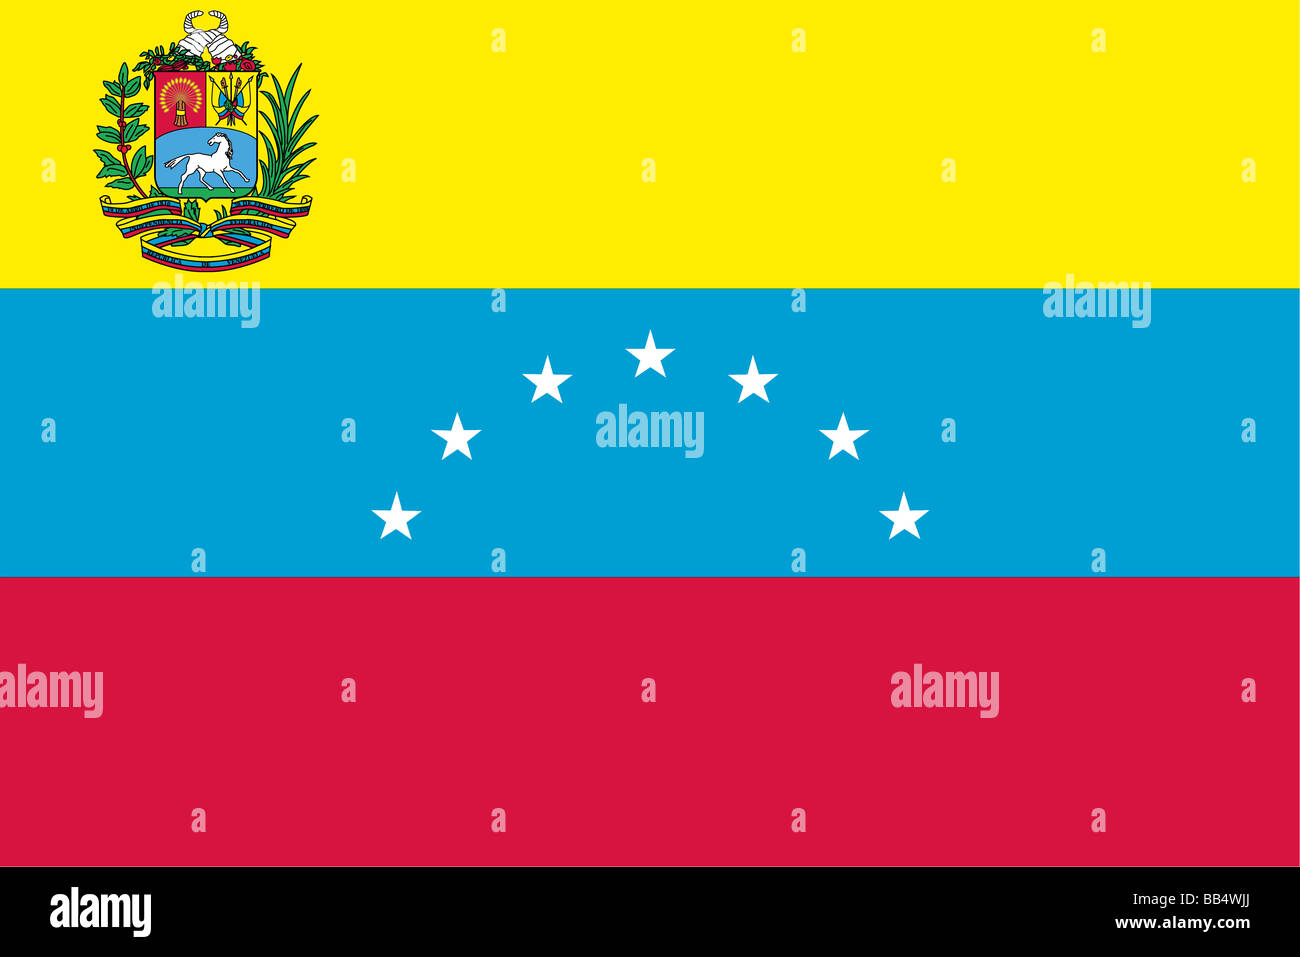 Venezuela del flag dal 1864 fino al 2006, quando un ottavo star è stato aggiunto per rappresentare la provincia storica della Guayana. Foto Stock